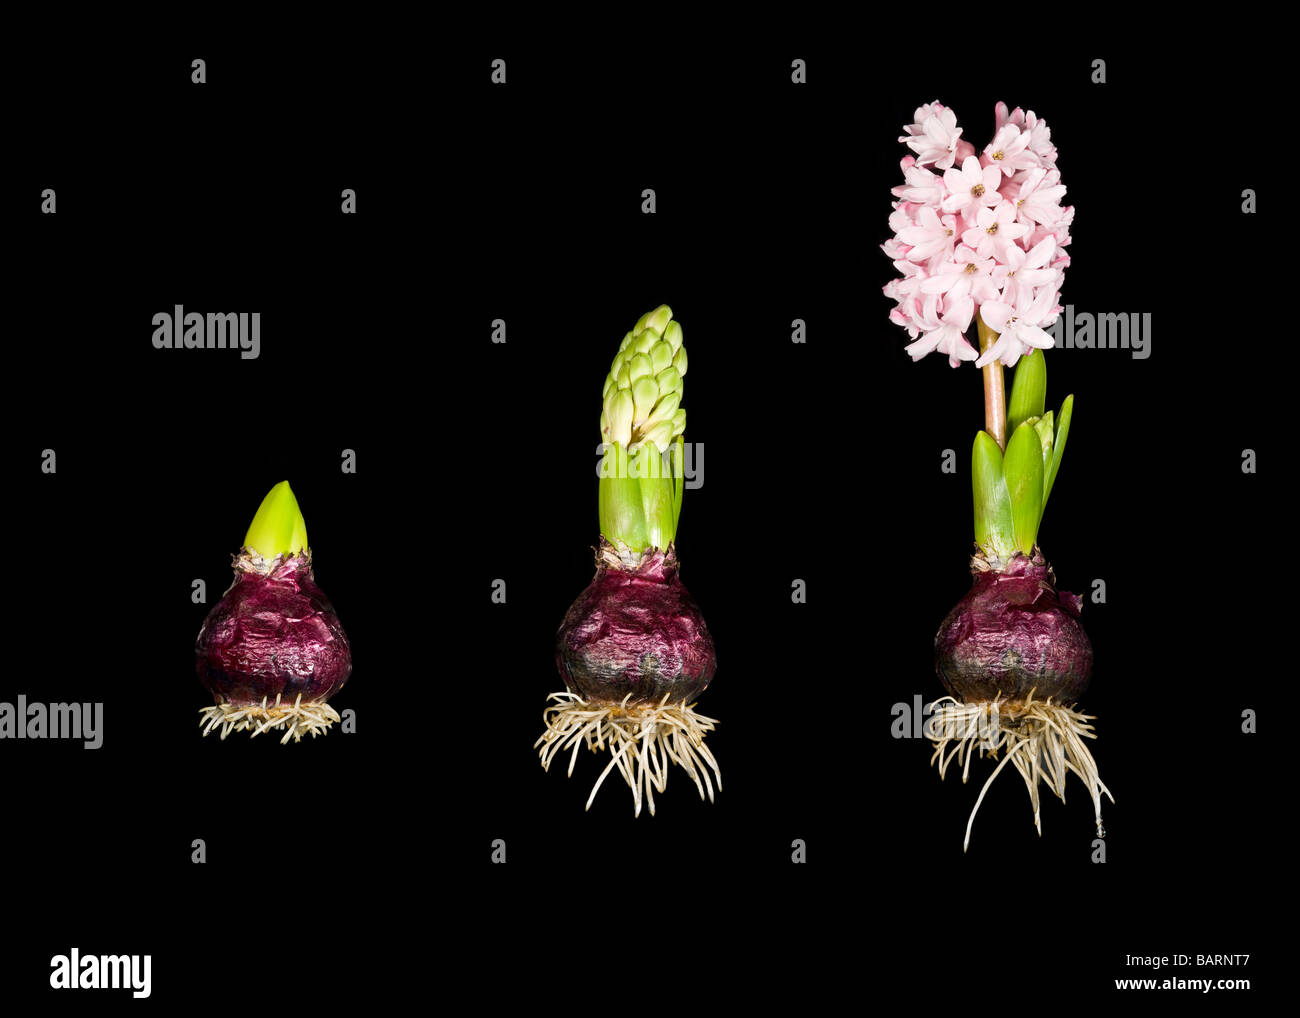 Eine 3 Stich Bildersequenz zeigt die Wurzeln und das Wachstum in 3 Stufen einer Hyazinthe Pflanze Glühbirne (Hyacinthus Orientalis). Stockfoto